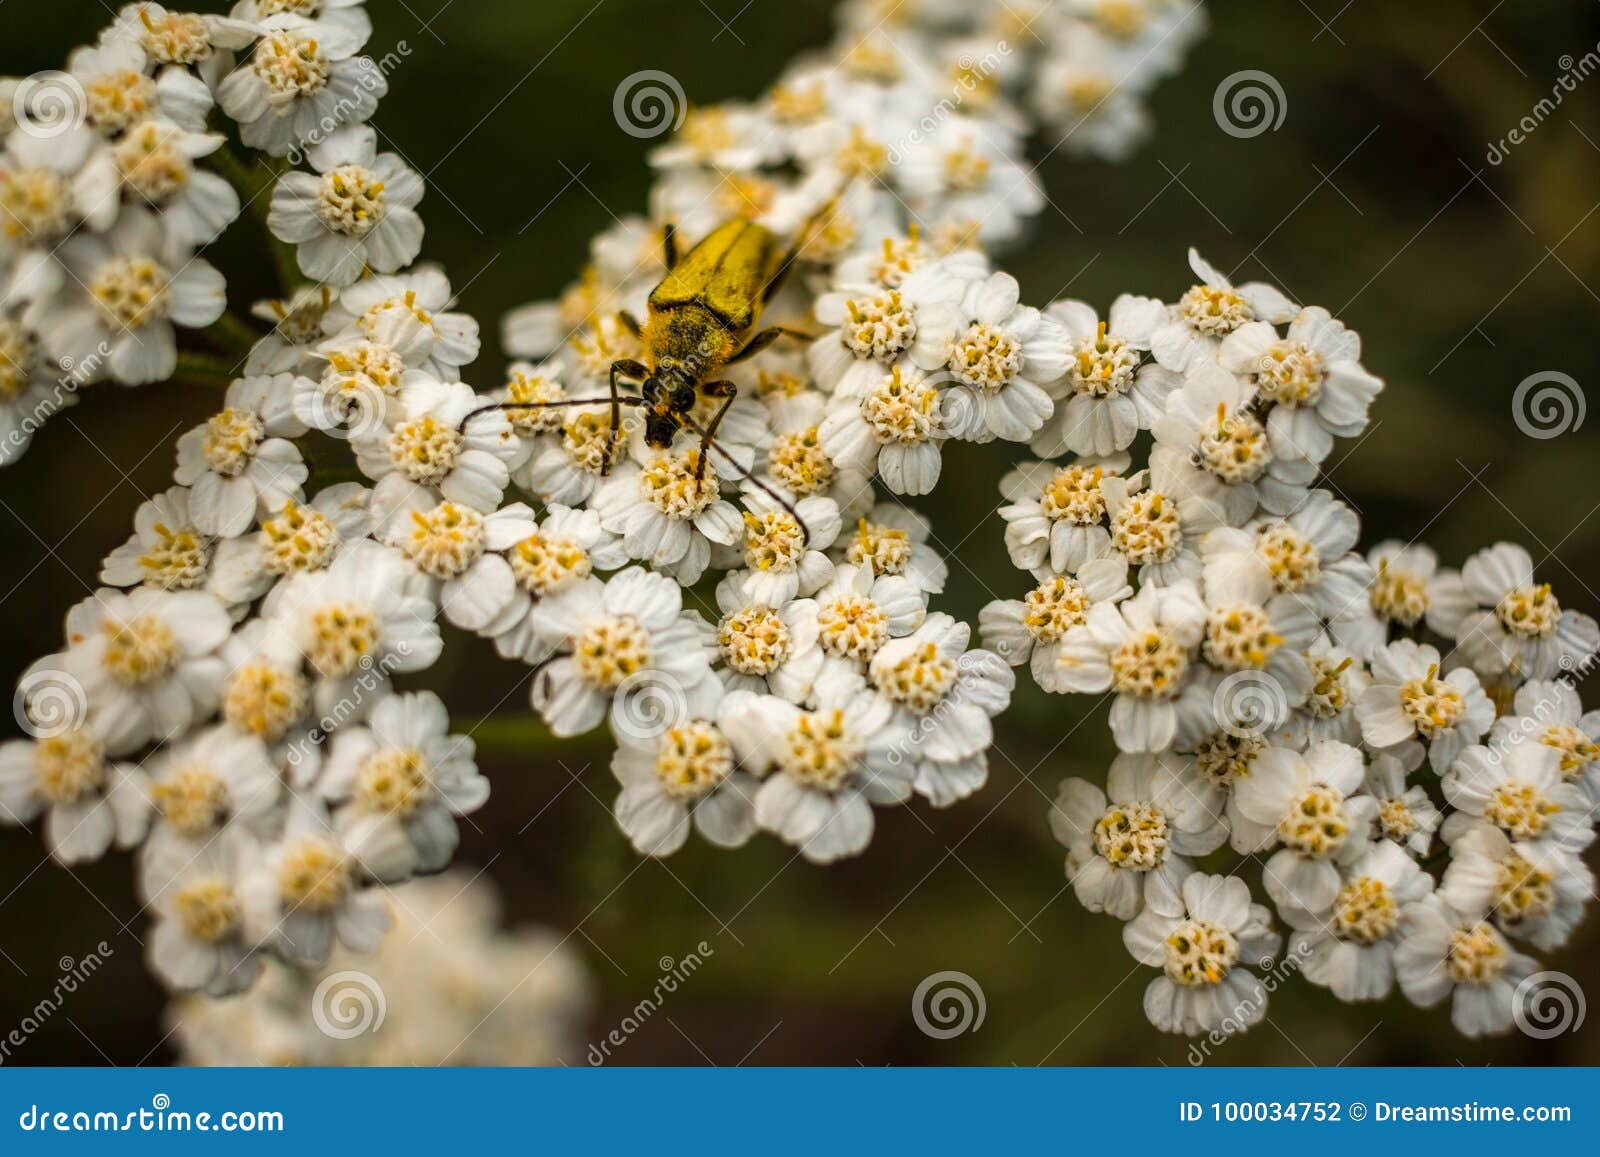 Fome do verão. Um inseto desugação que aprecia uma flor no final do verão Bralorne recolhido, BC, Canadá